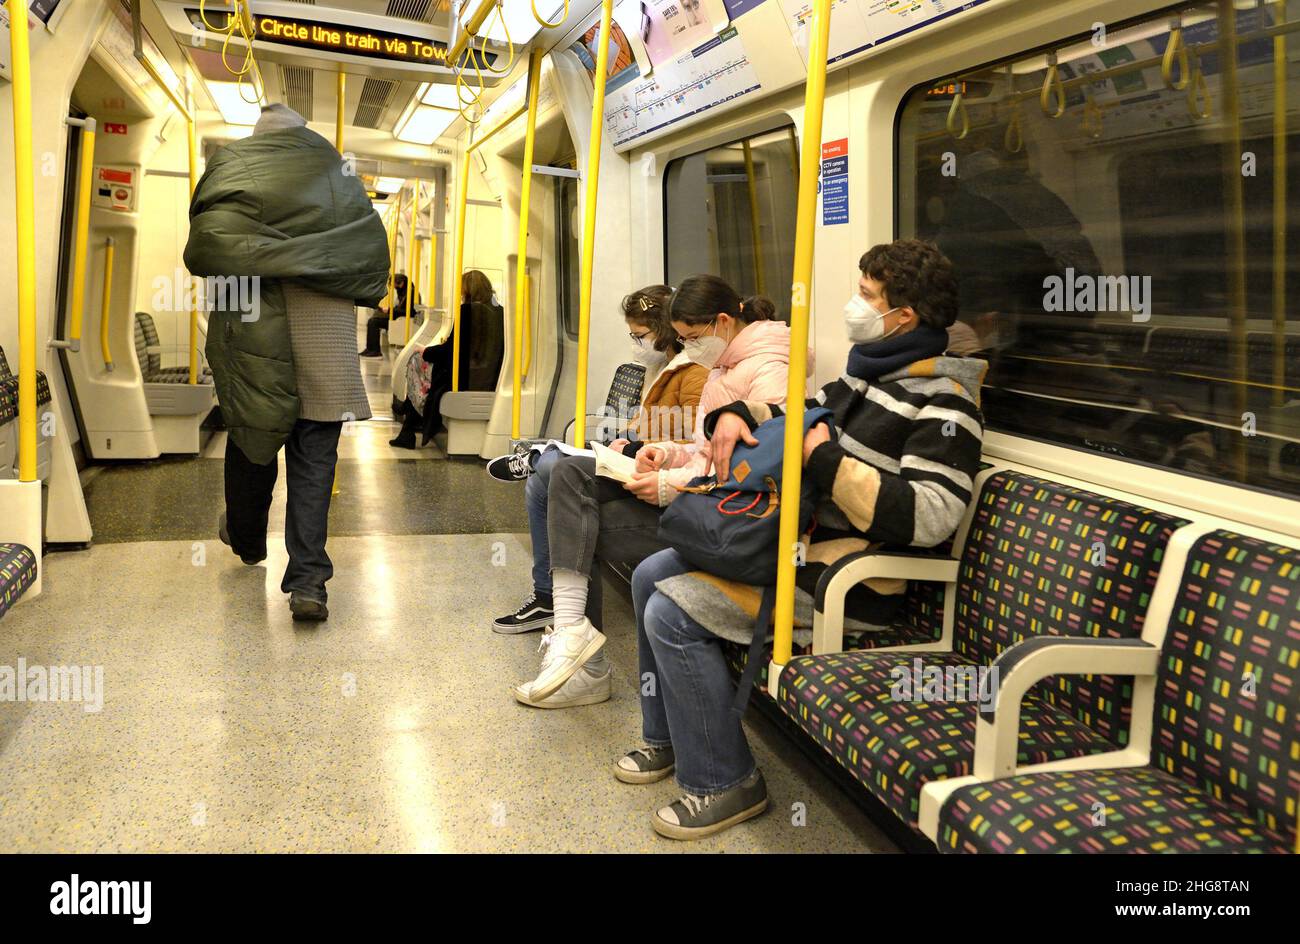 Londra, Inghilterra, Regno Unito. Passeggeri che indossano facemasks COVID su un treno sotterraneo, gennaio 2022 Foto Stock